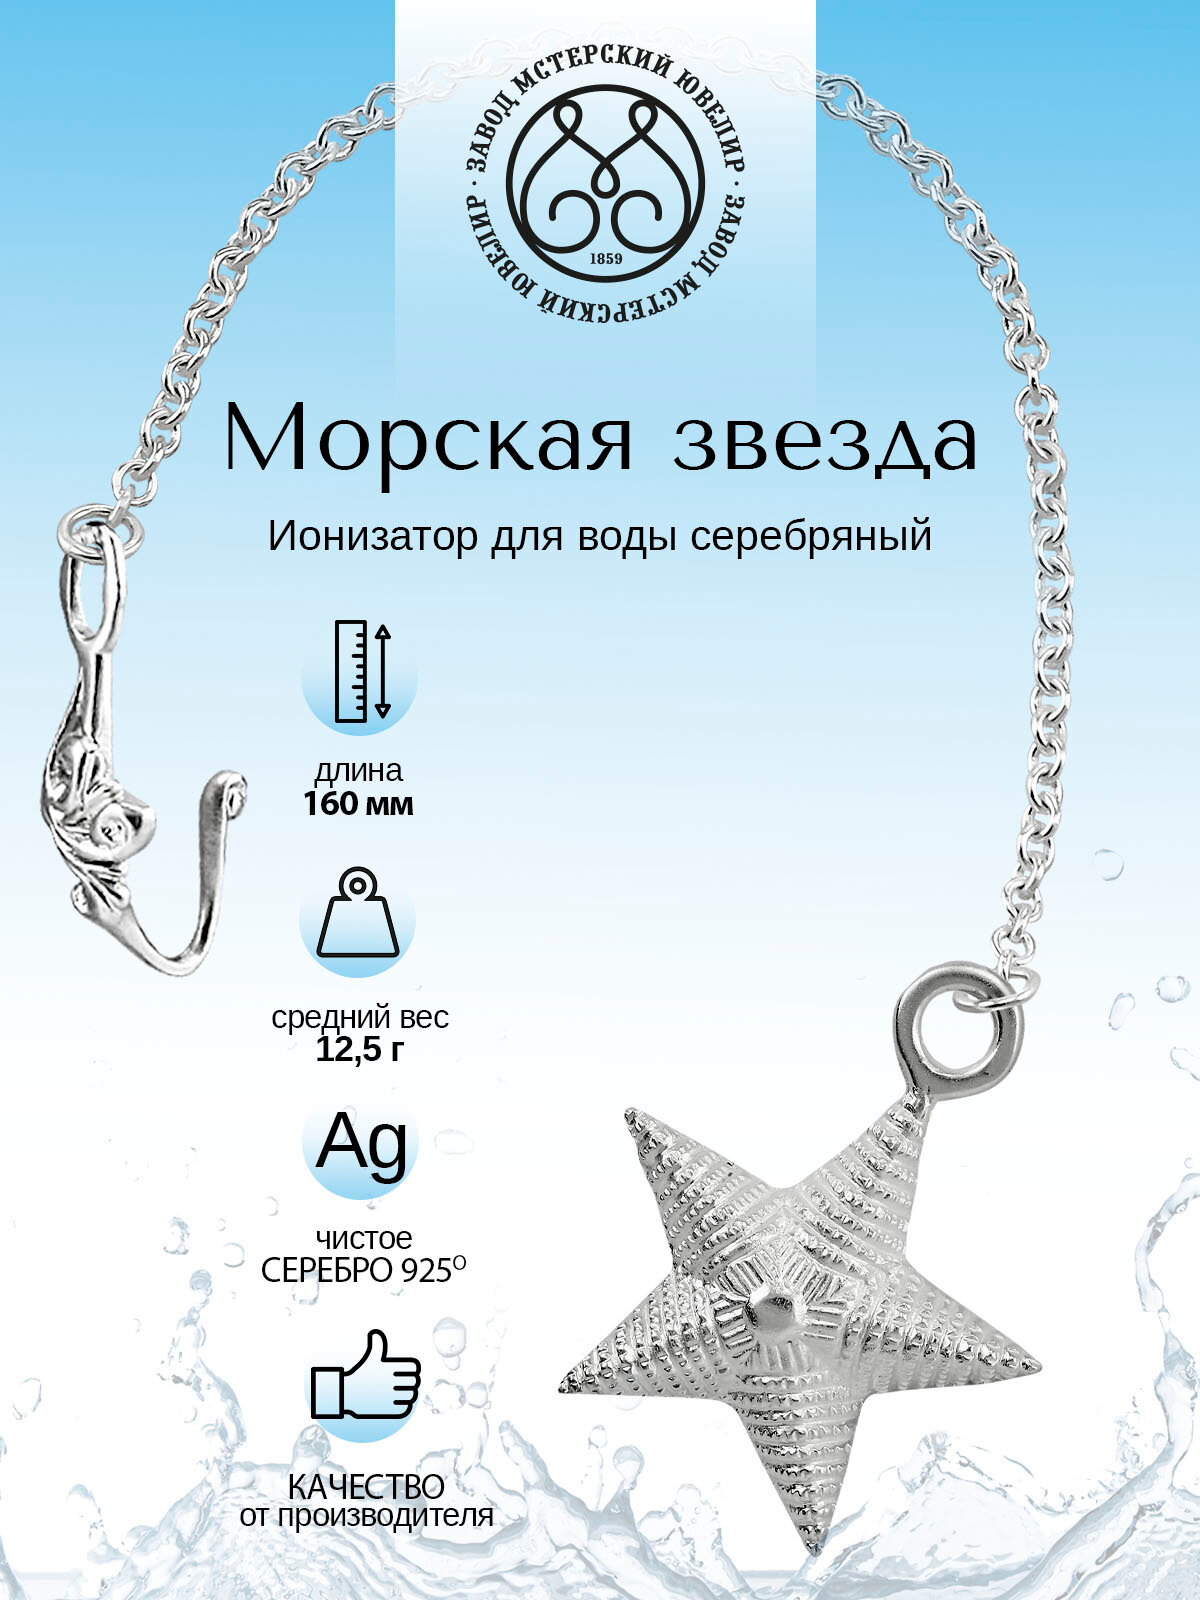 Серебряный ионизатор для воды №20 "Звезда" от Мстерский ювелир